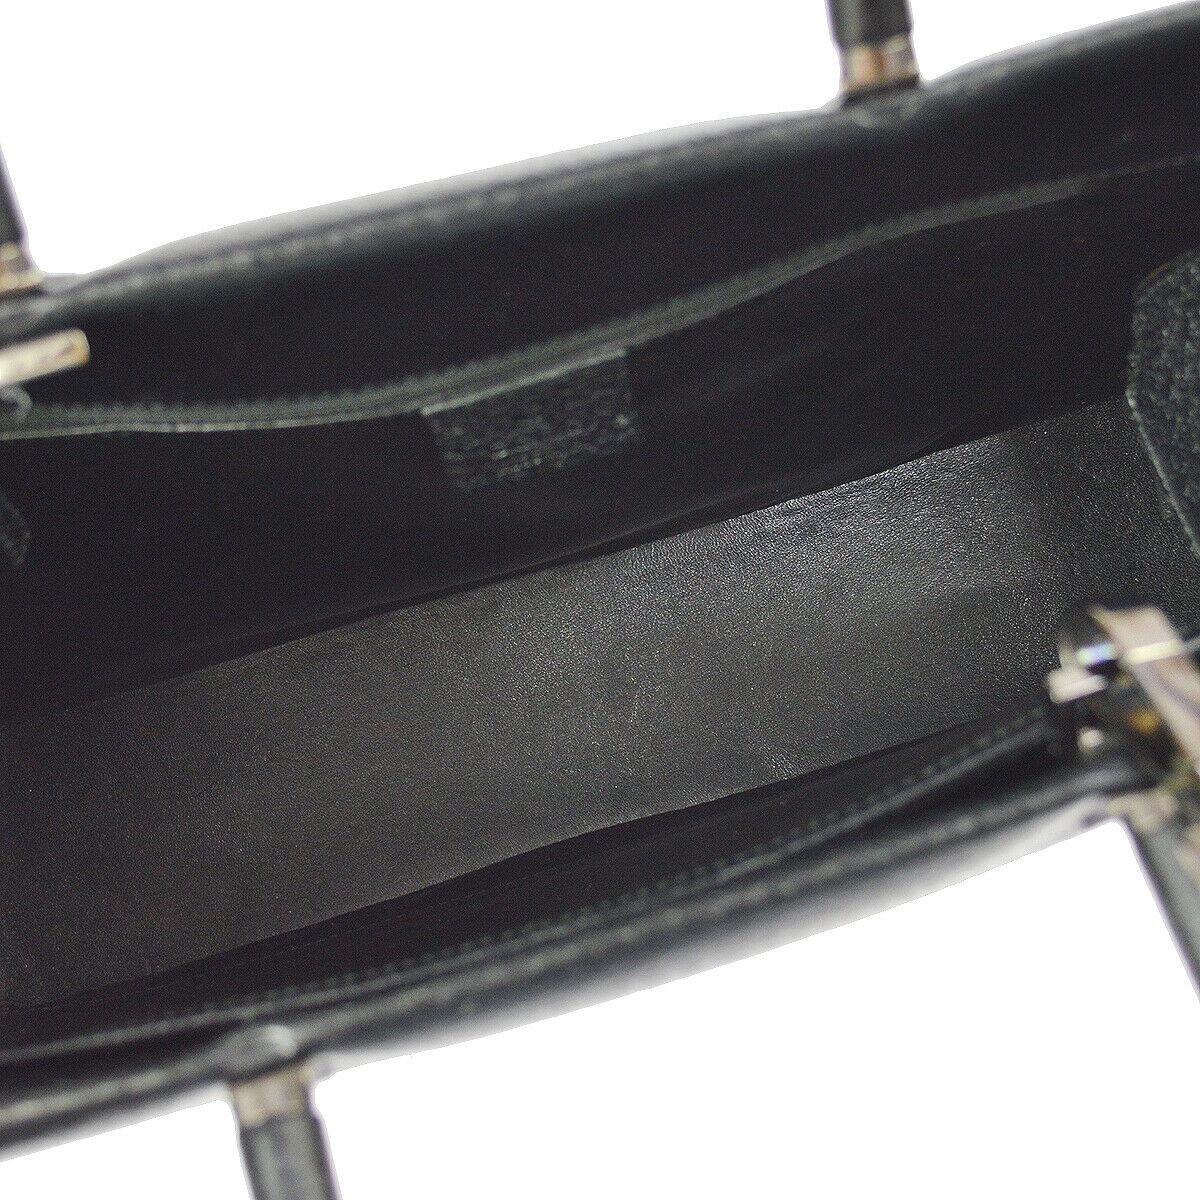 Gucci Black Leather Bamboo Large Top Handle Shopper CarryallShoulder Tote Bag  2